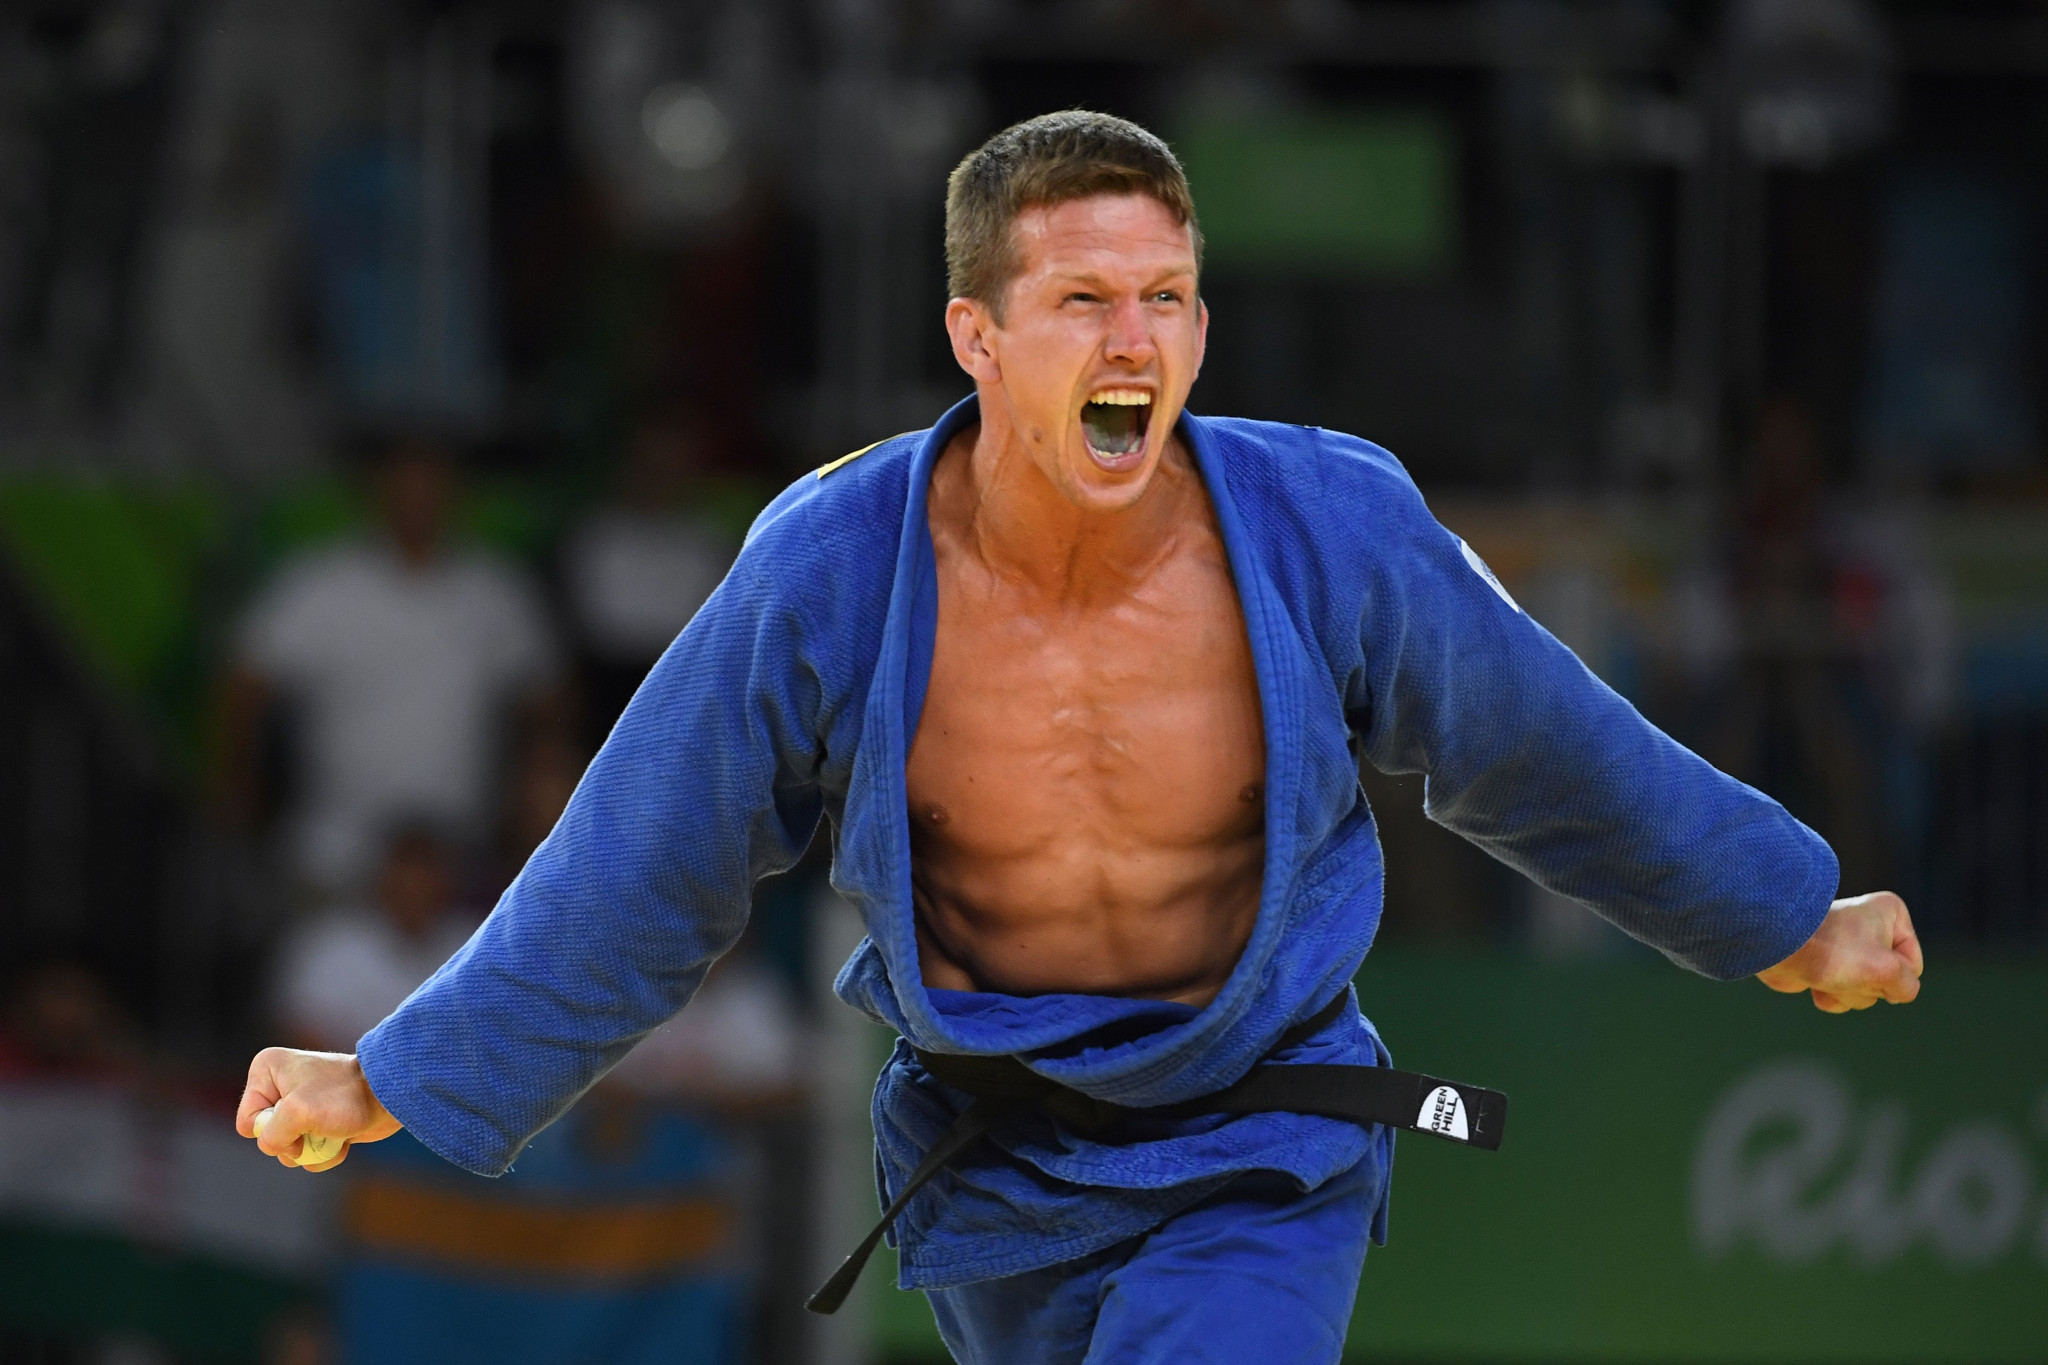 Belgium's Olympic judo bronze medallist Dirk Van Tichelt has announced his retirement ©Getty Images